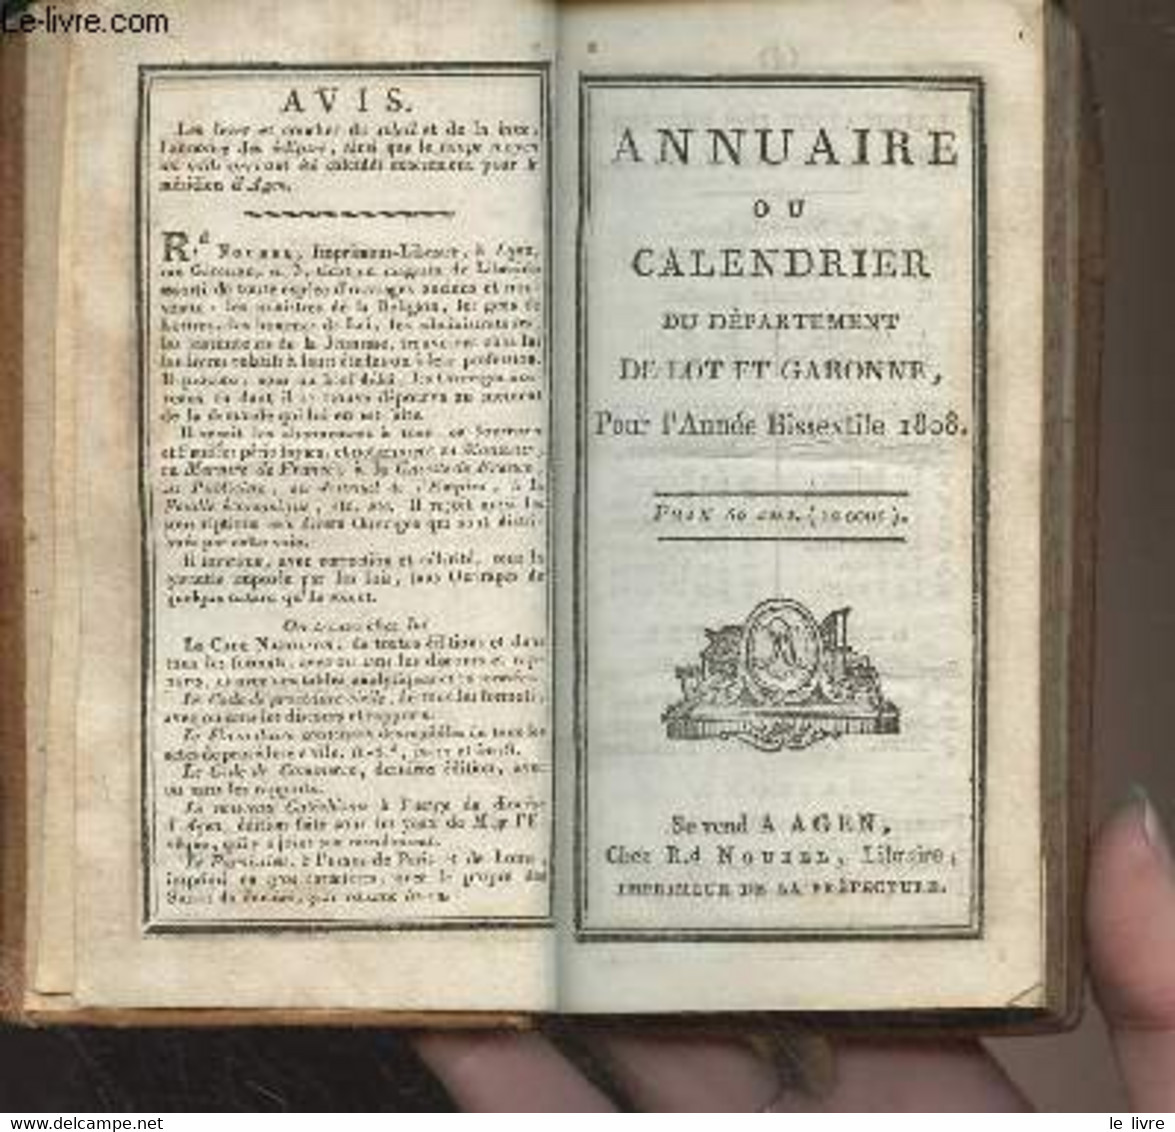 Annuaire Ou Calendrier Du Département De Lot Et Garonne Pour L'année Bissextile 1808 - Collectif - 1808 - Agendas & Calendarios